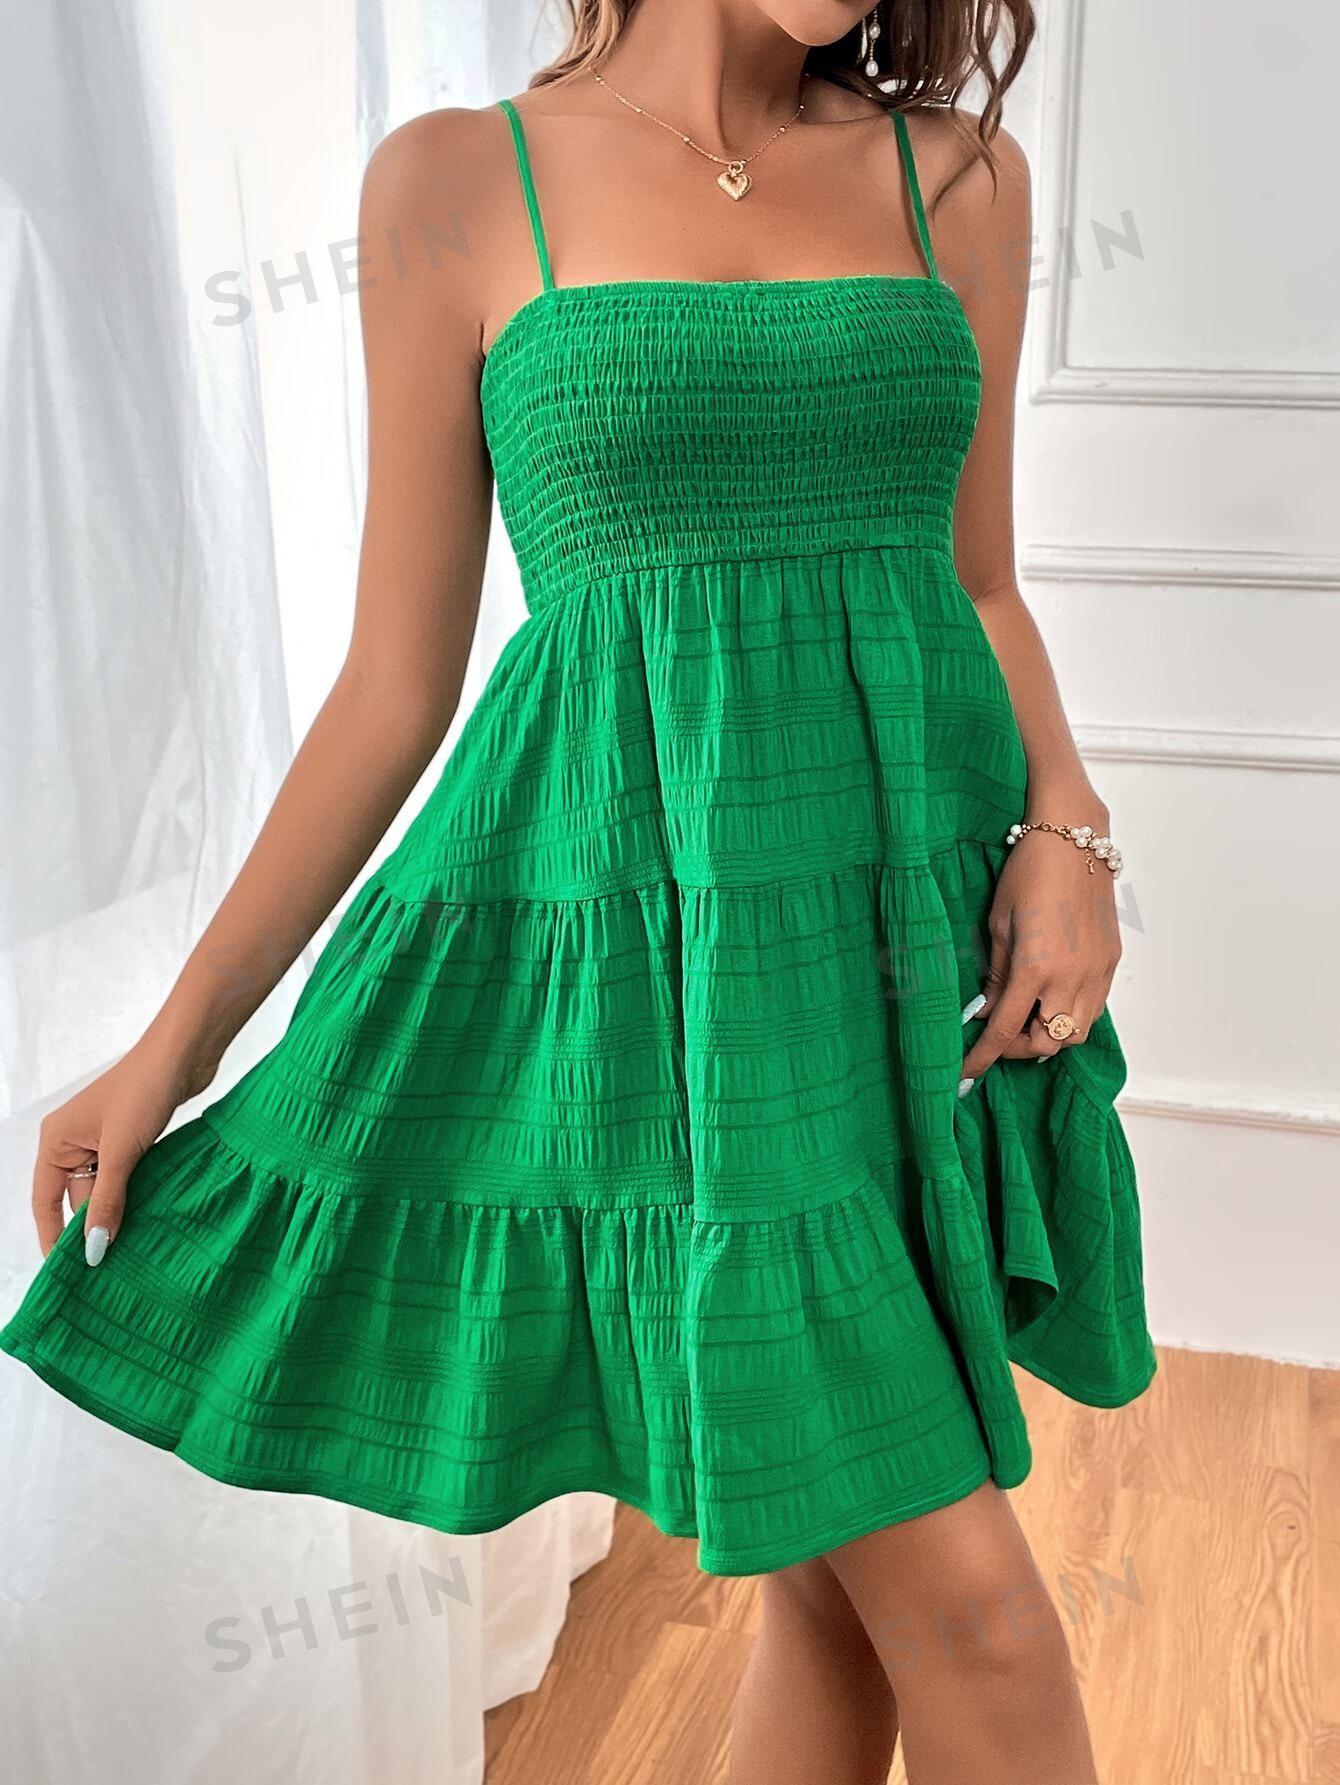 shein mod однотонное платье с гофрированной спиной и расклешенным подолом синий SHEIN WYWH Женское однотонное платье на тонких бретельках с оборками и подолом, зеленый